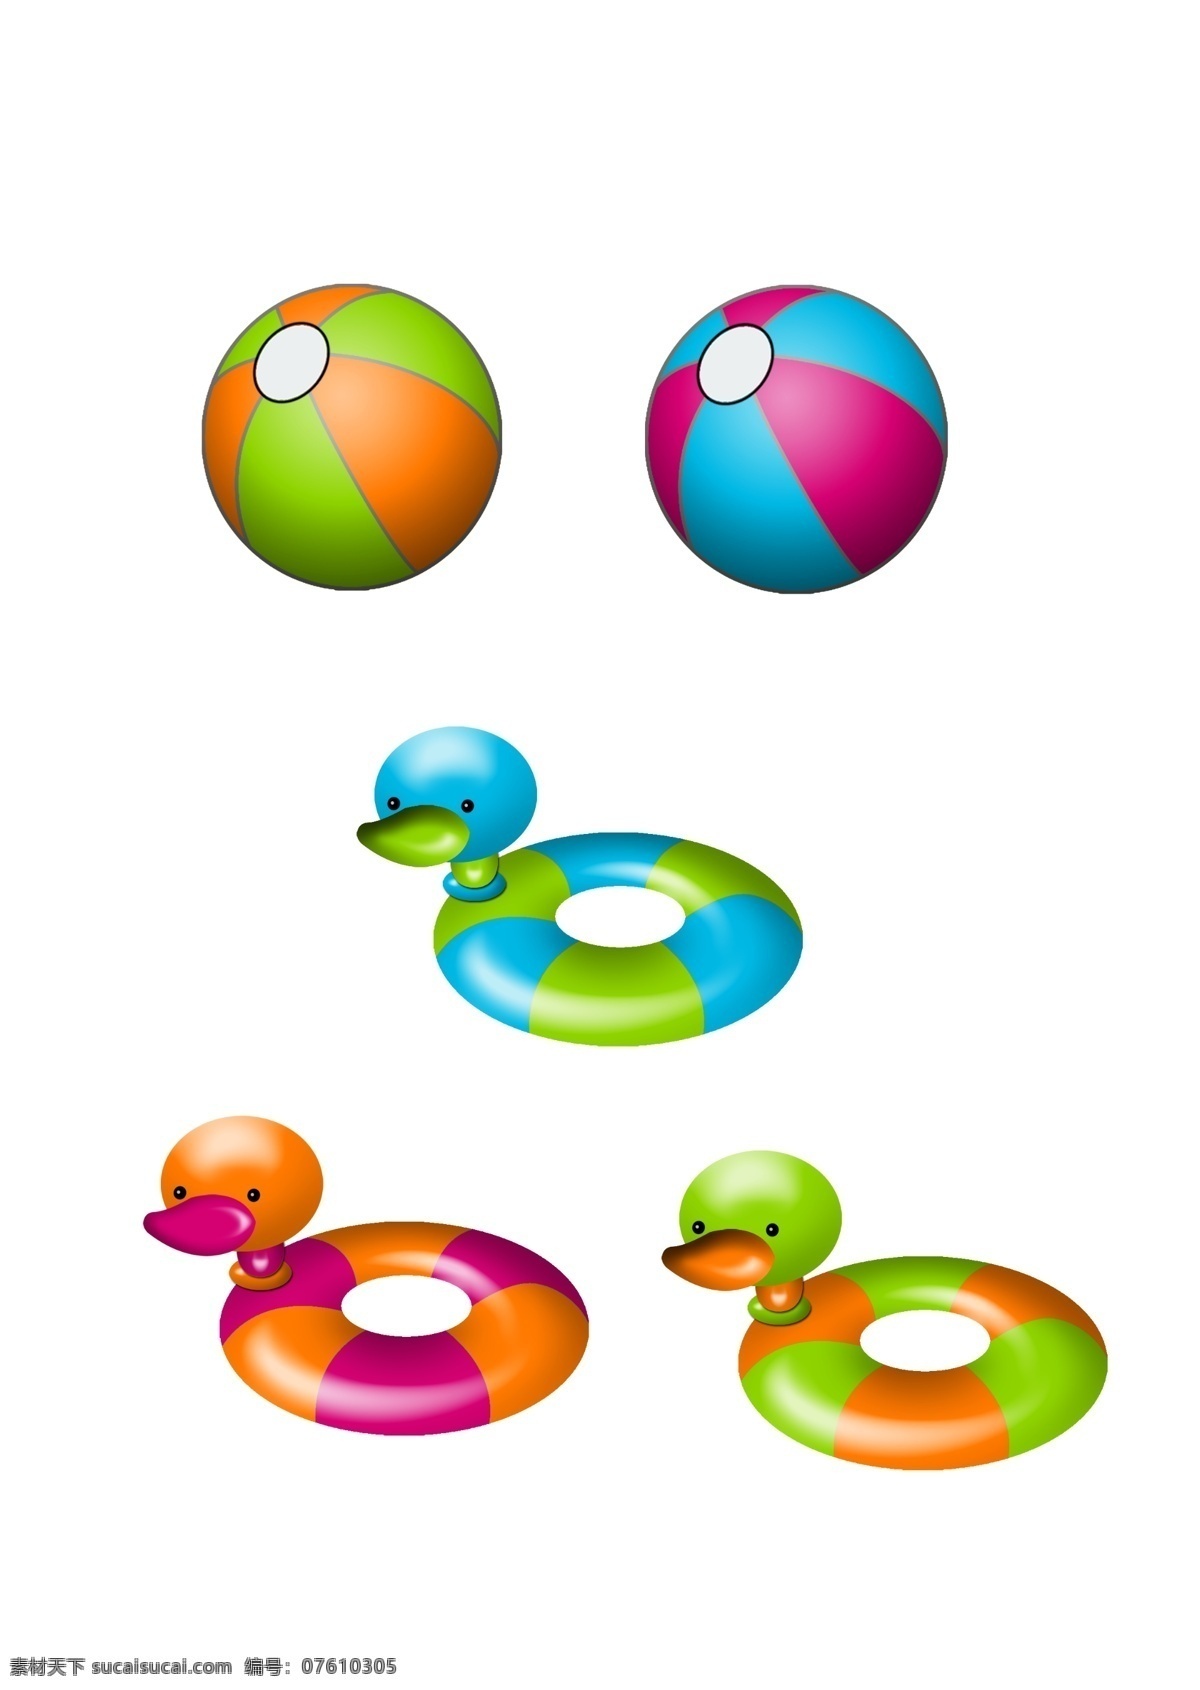 救生圈和水球 救生圈 水球 球 沙滩 玩具 卡通 鲜艳 分层